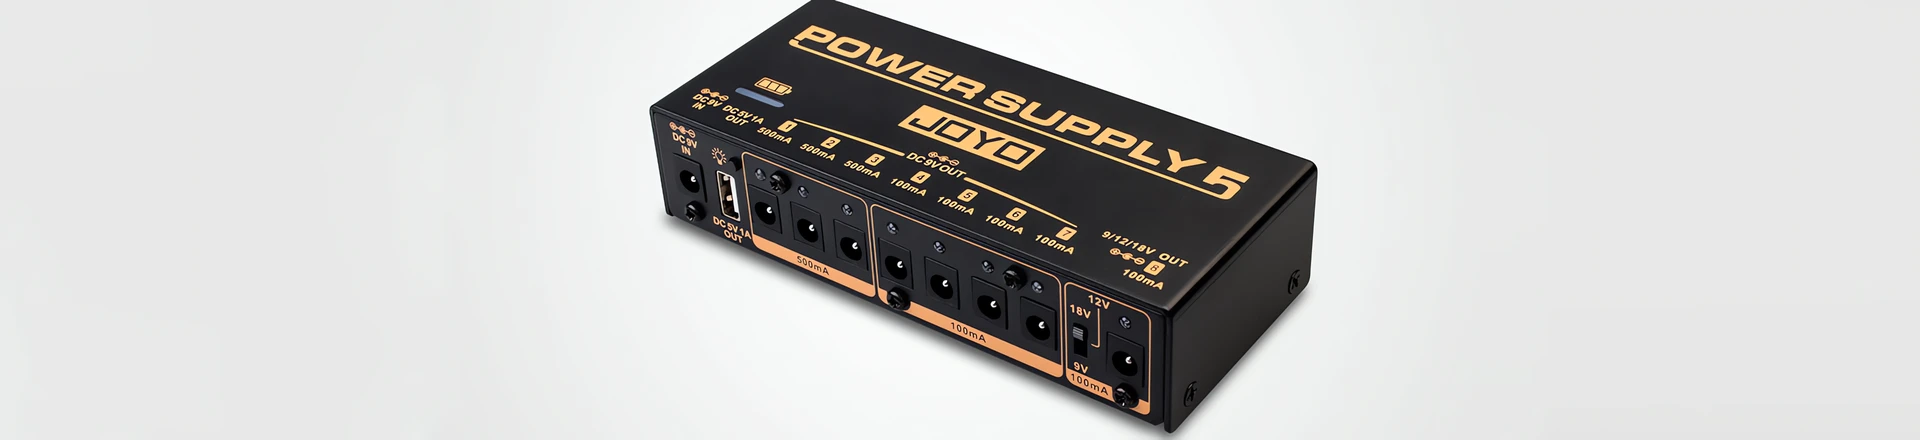 Joyo Audio prezentuje zasilacz JP-05 Power Supply